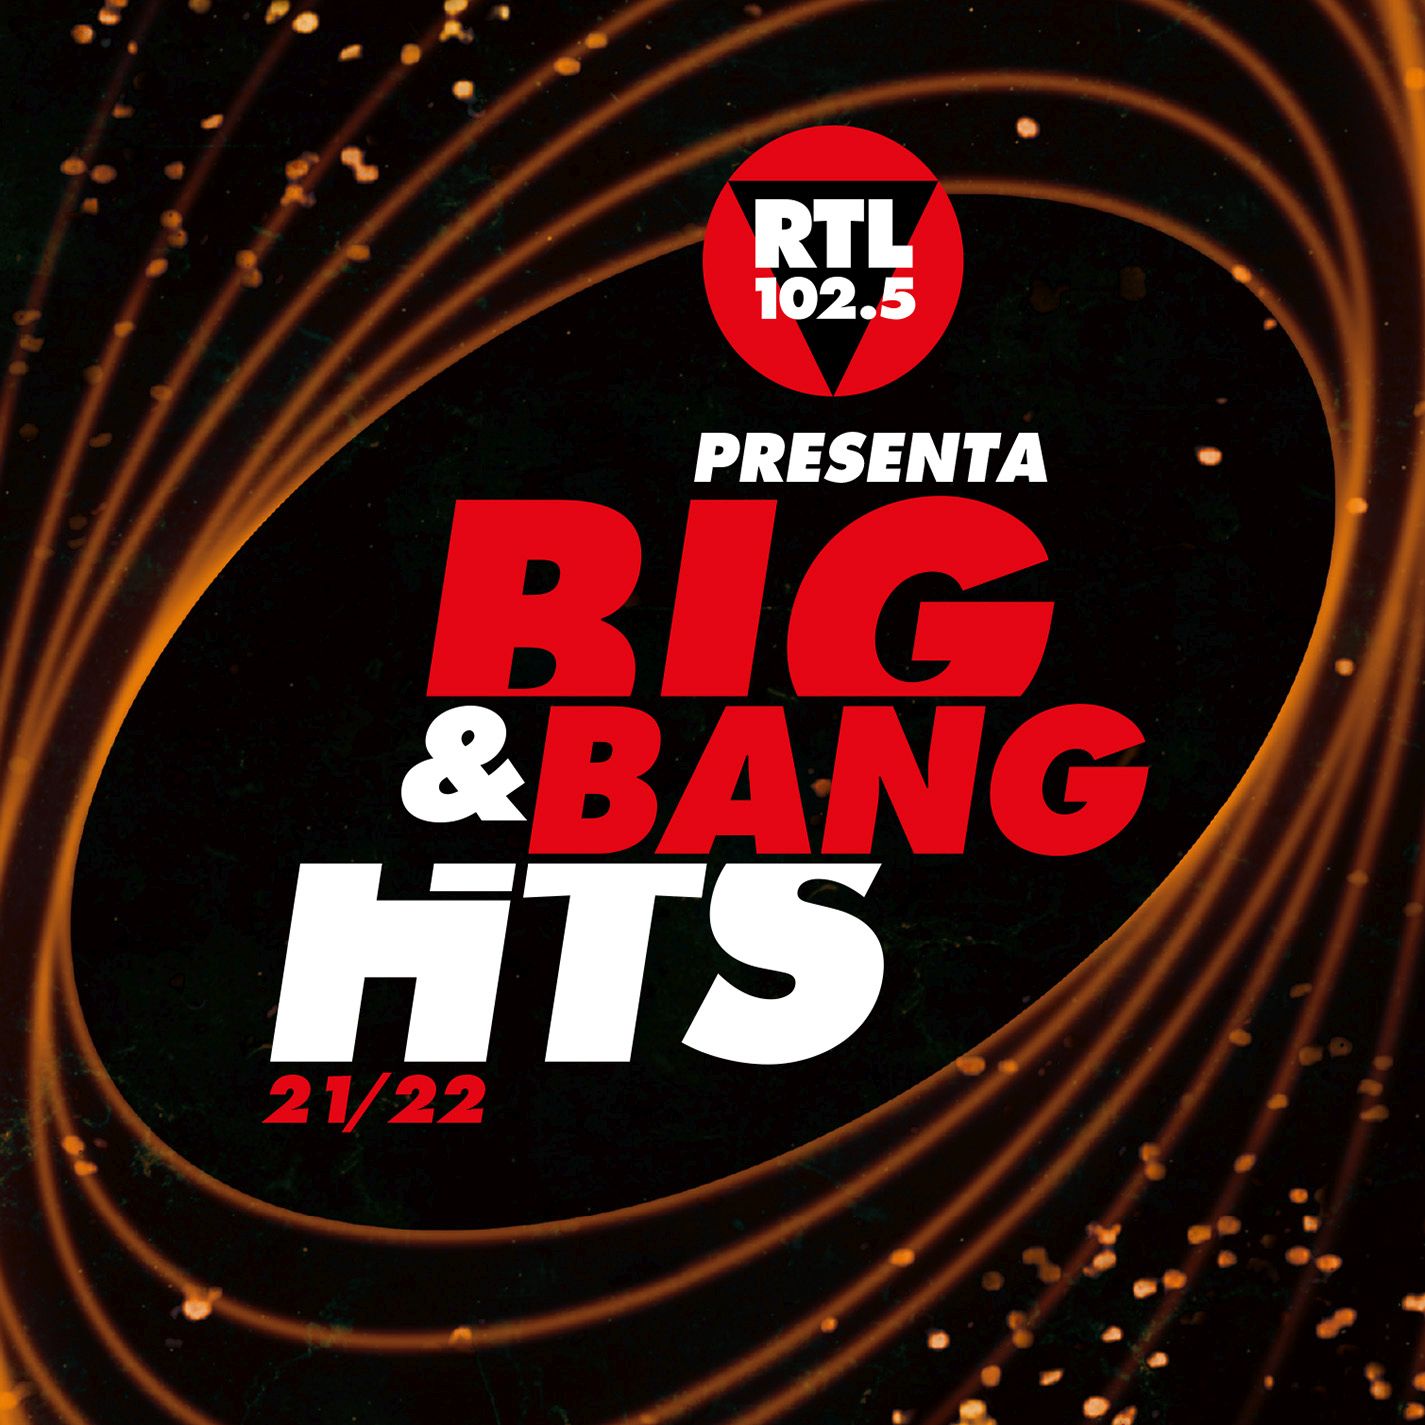 Aa.Vv. - Rtl 102.5 Presenta Big&Bang Hits 21/22 - Imagen 1 de 1